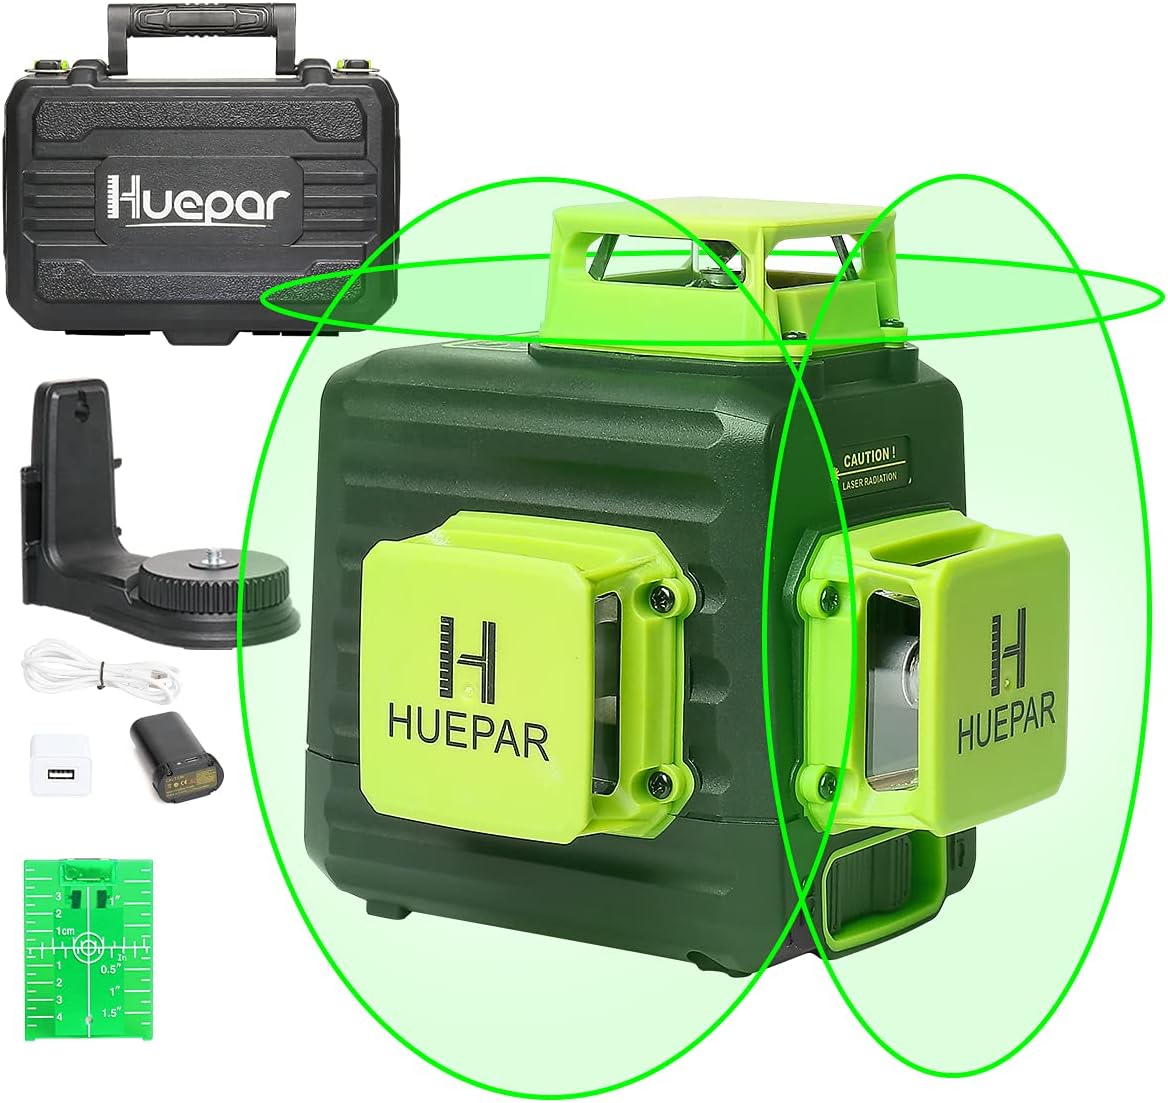 Huepar 3D Cross Line Laser Level Review